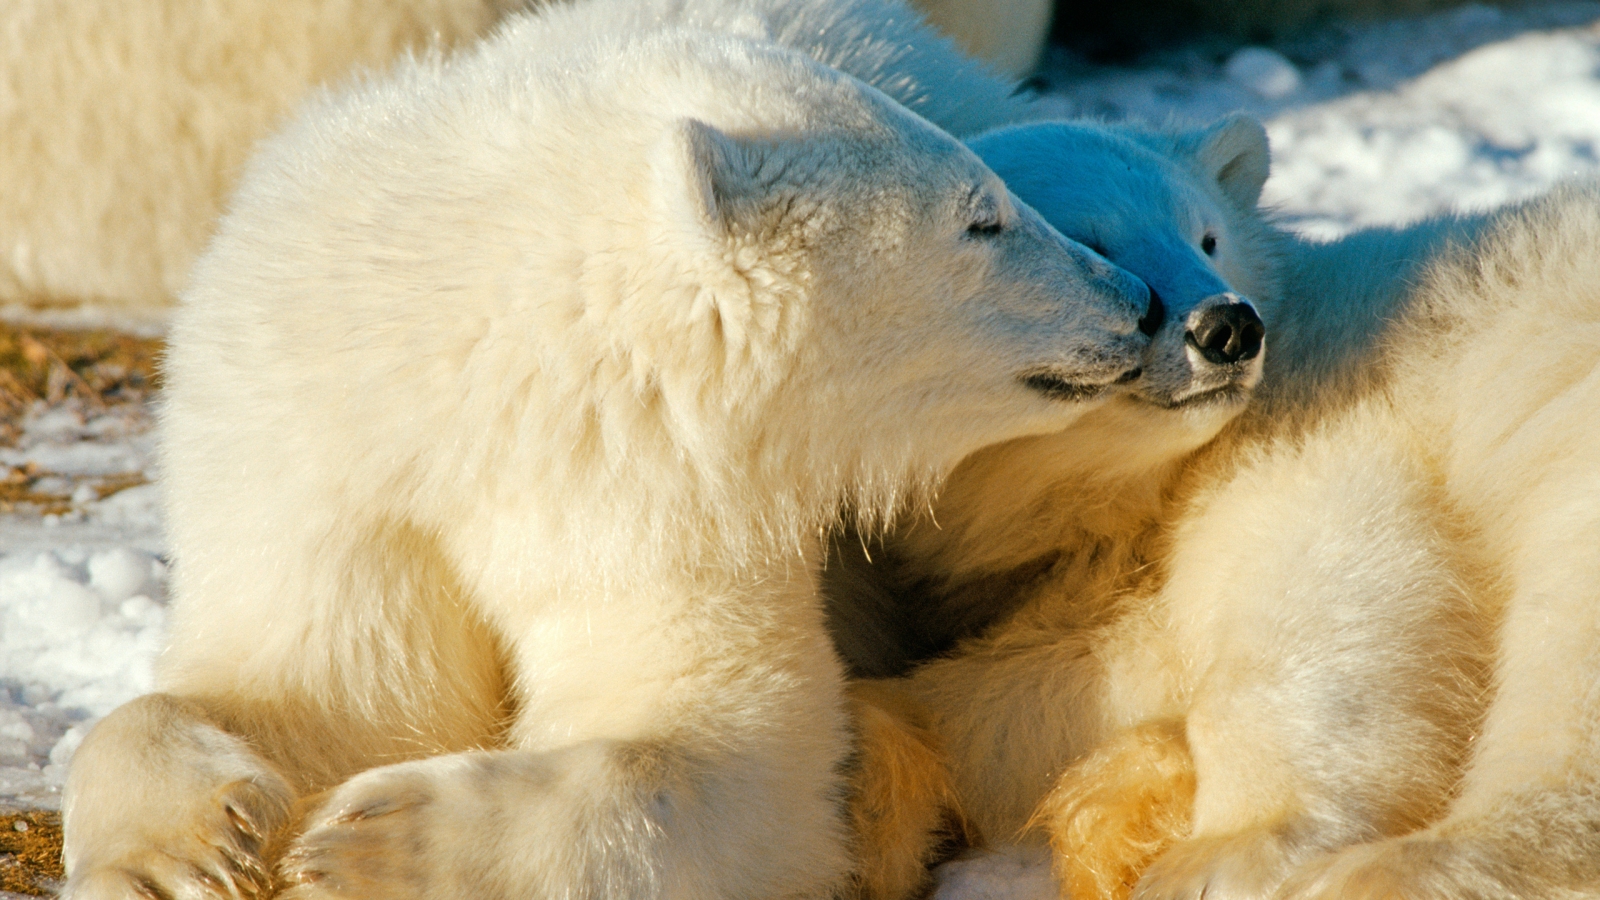 Polar Bears In Love for 1600 x 900 HDTV resolution